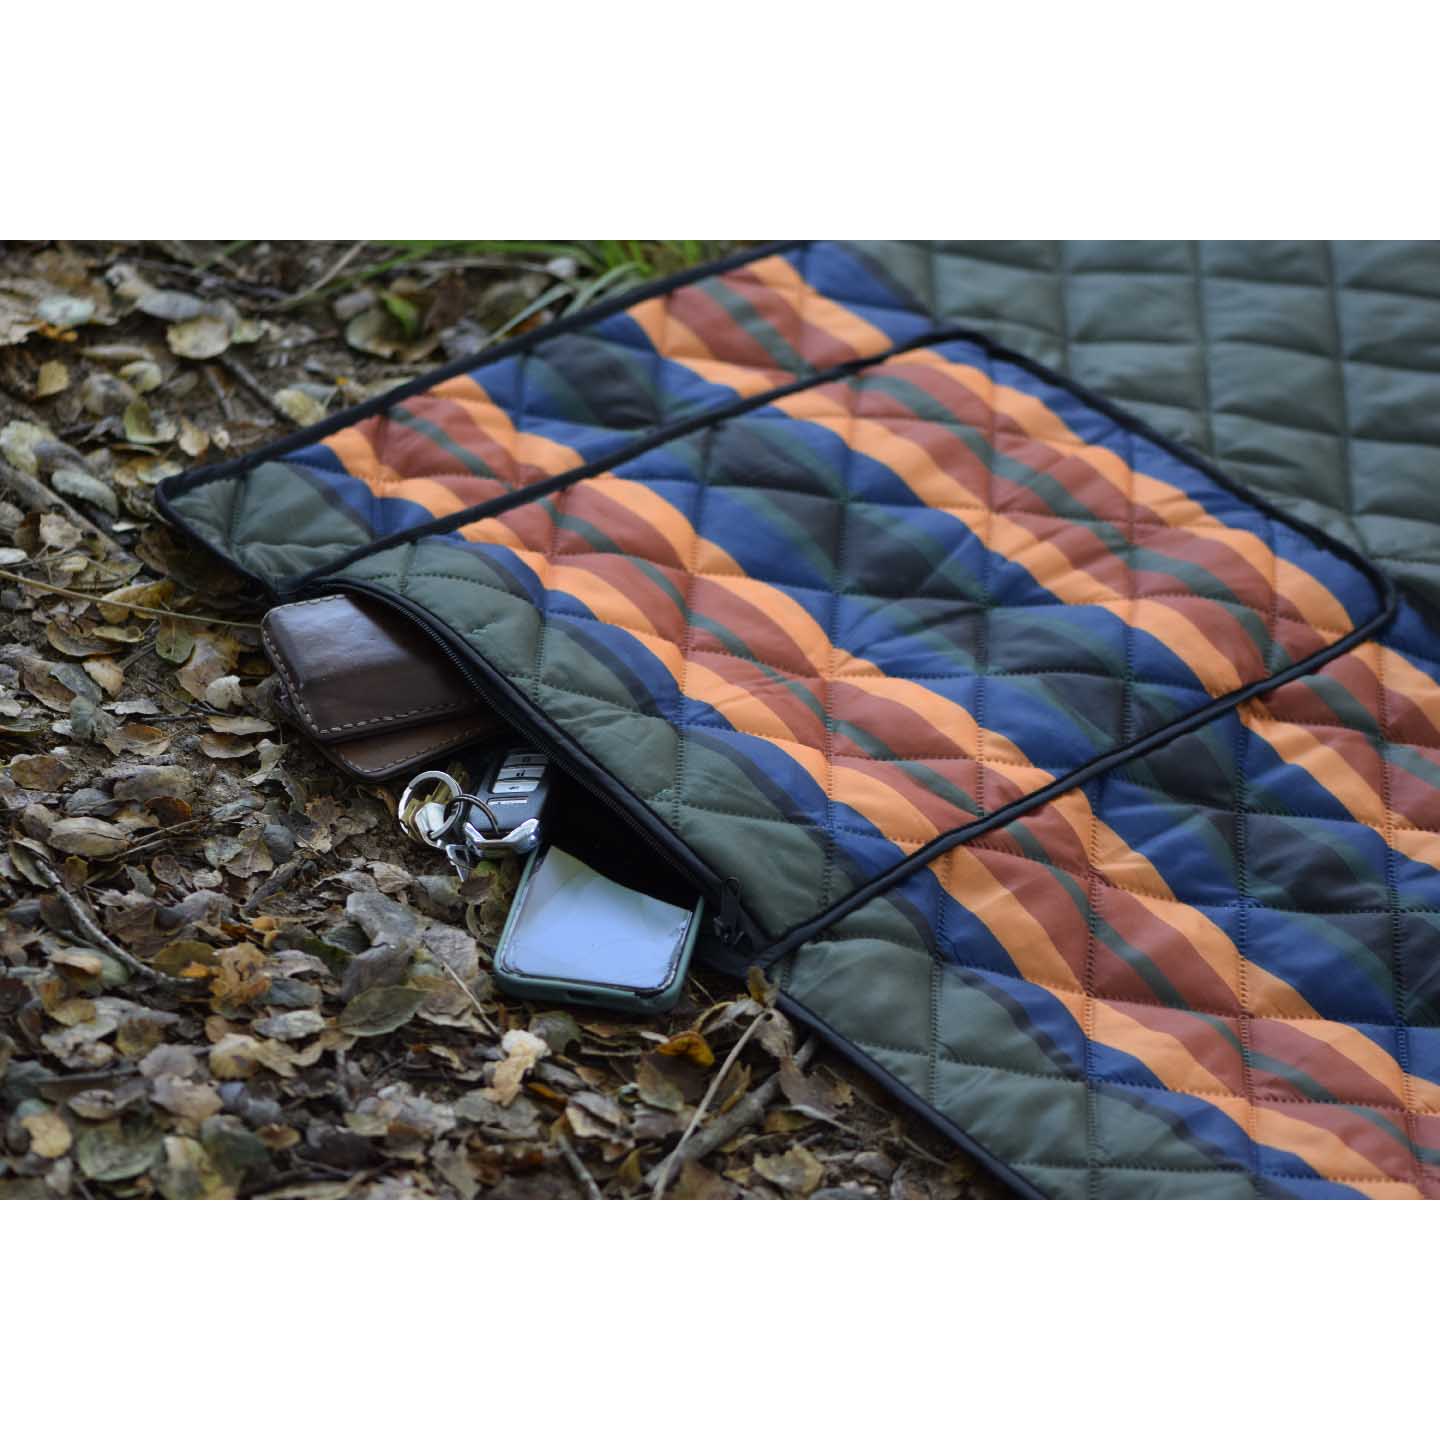 Puffy Blanket with Pocket Stuff Sack | Camp, Concert & Festival Blanket